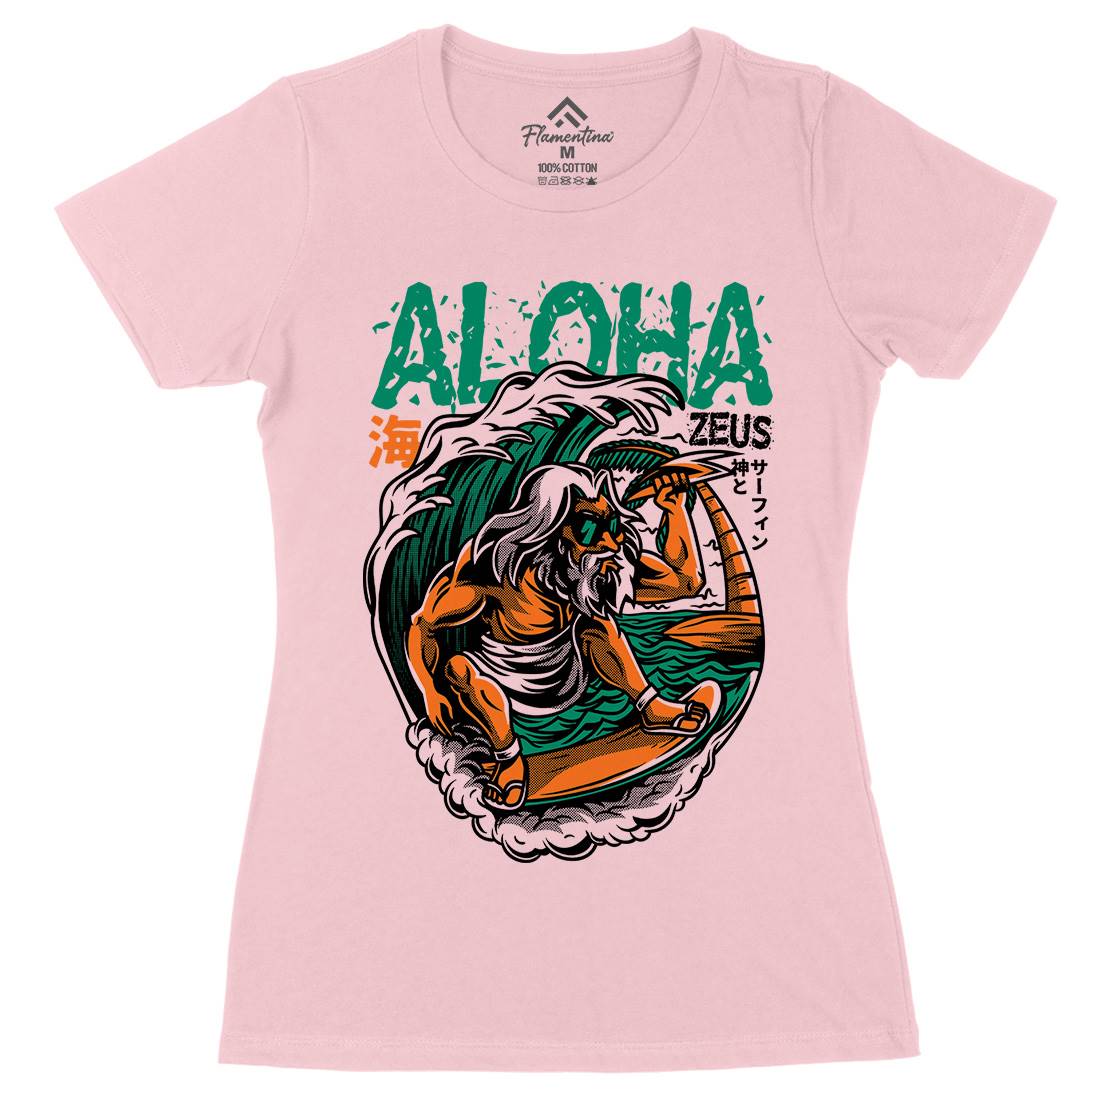 Aloha Zeus Womens Organic Crew Neck T-Shirt Surf D703